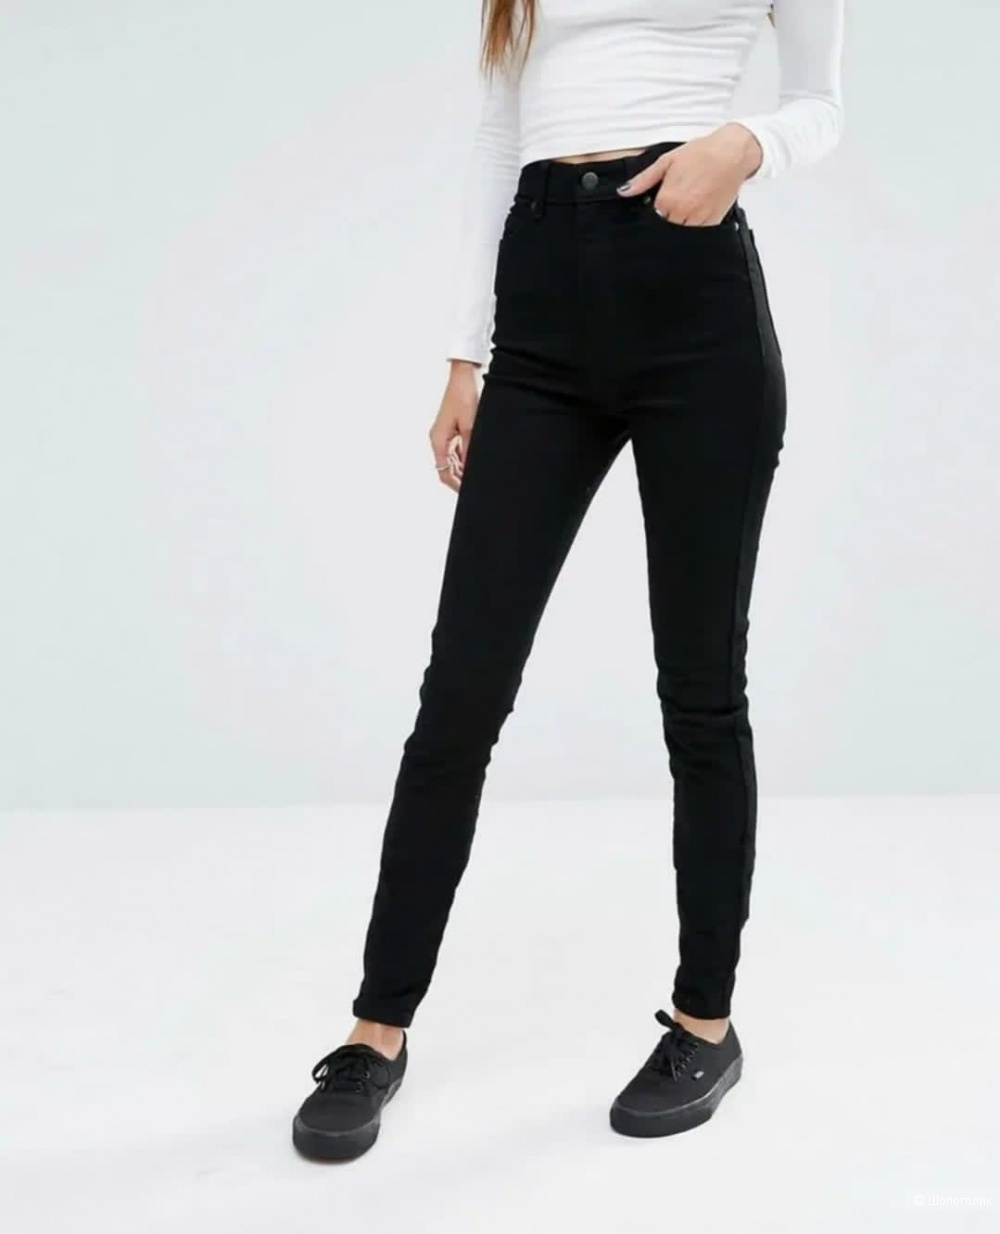 Обтягивающие черные штаны. Джинсы бершка женские черные. Чёрные джинсы женские. Чёрные узкие джинсы женские. Черные облегающие джинсы.